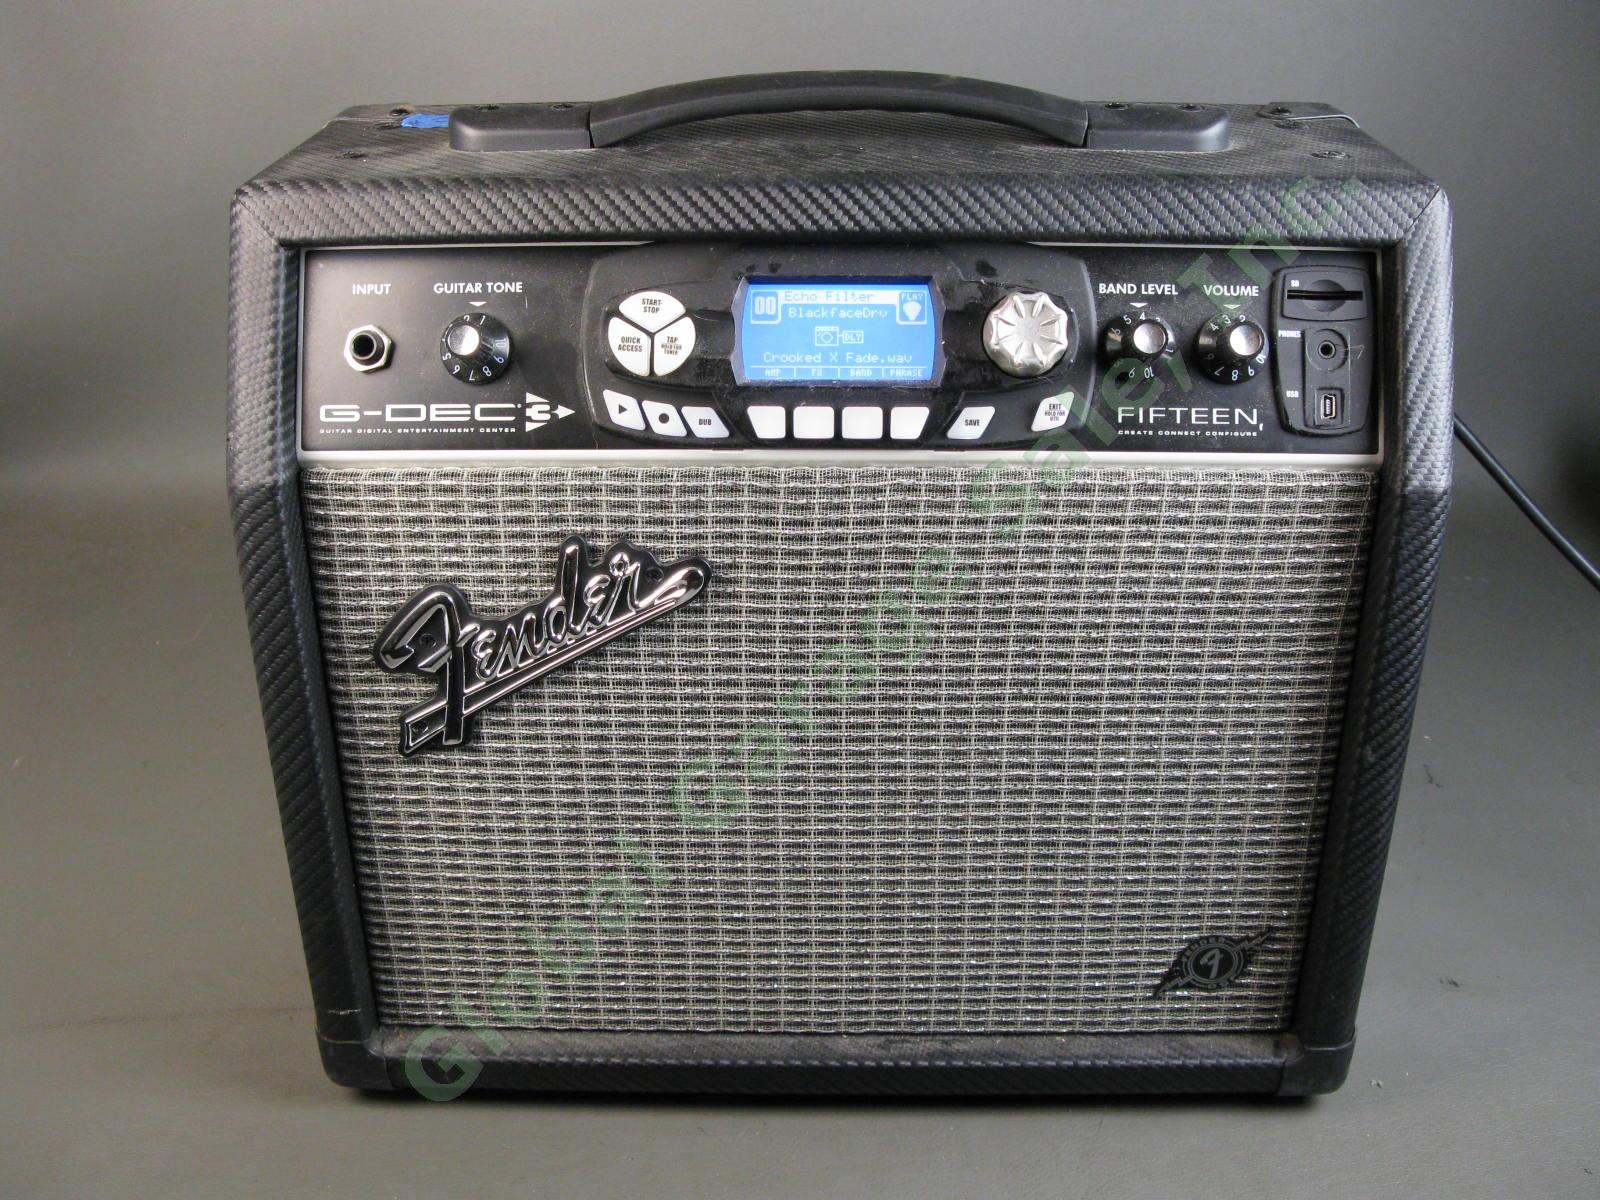 Fender G-DEC 3 Fifteen Electric Guitar Amplifier Digital Entertainment Center NR